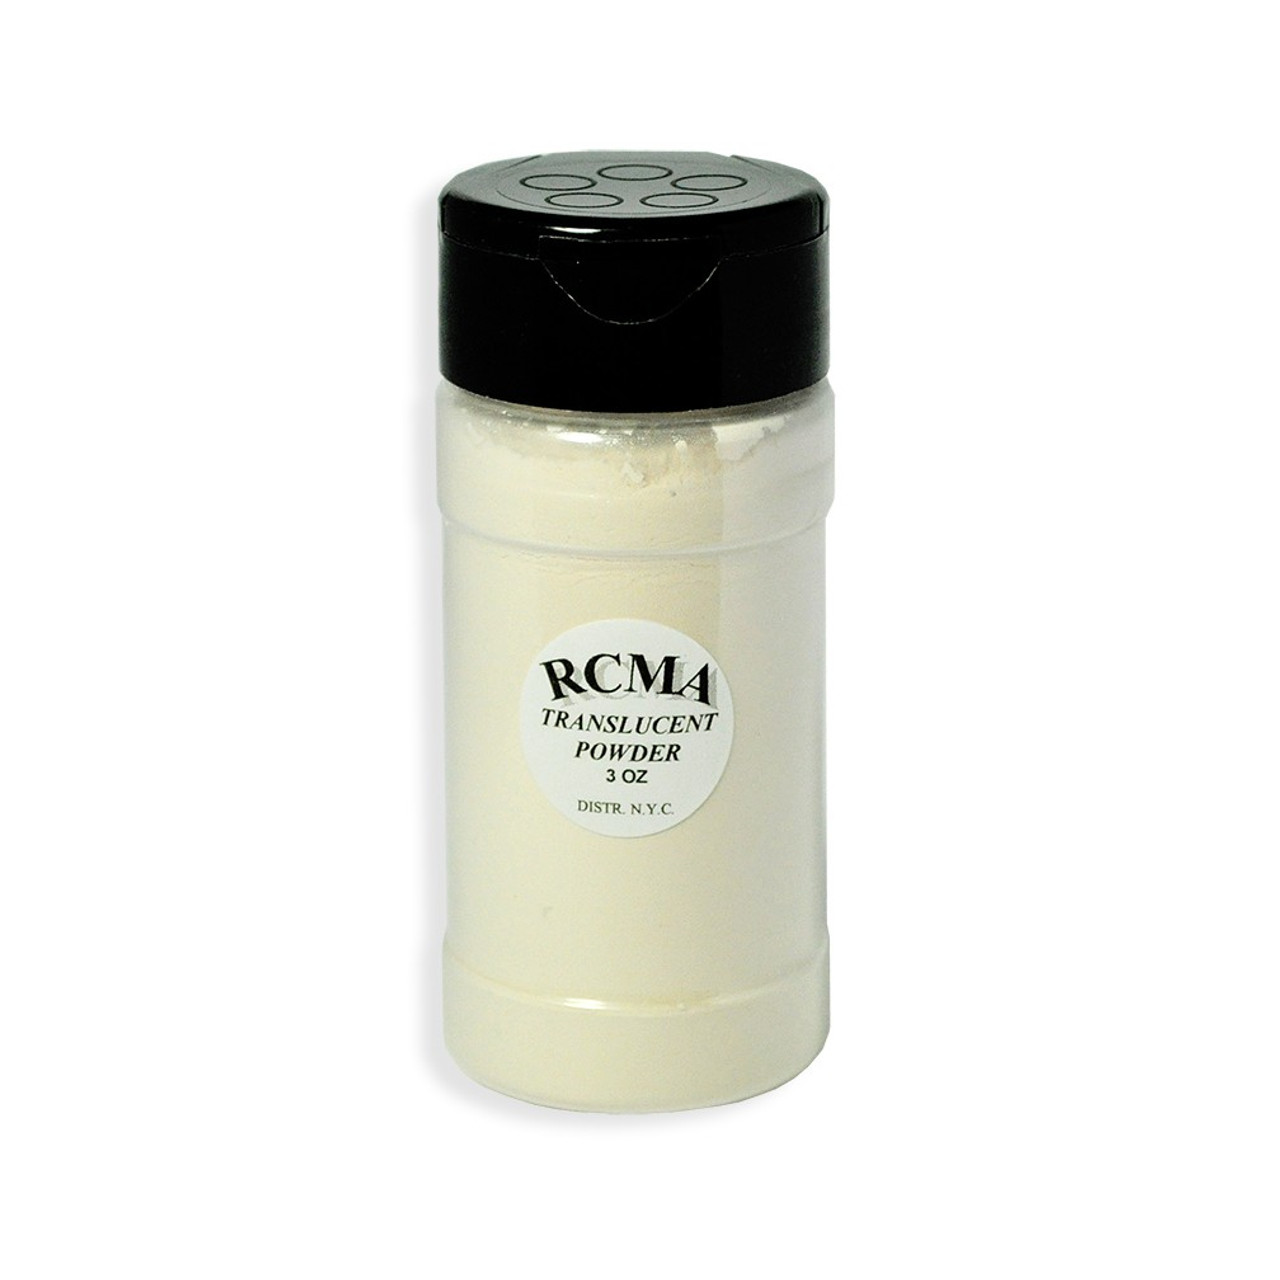 RCMA Translucent Powder, 3 oz, Professional Quality Makeup